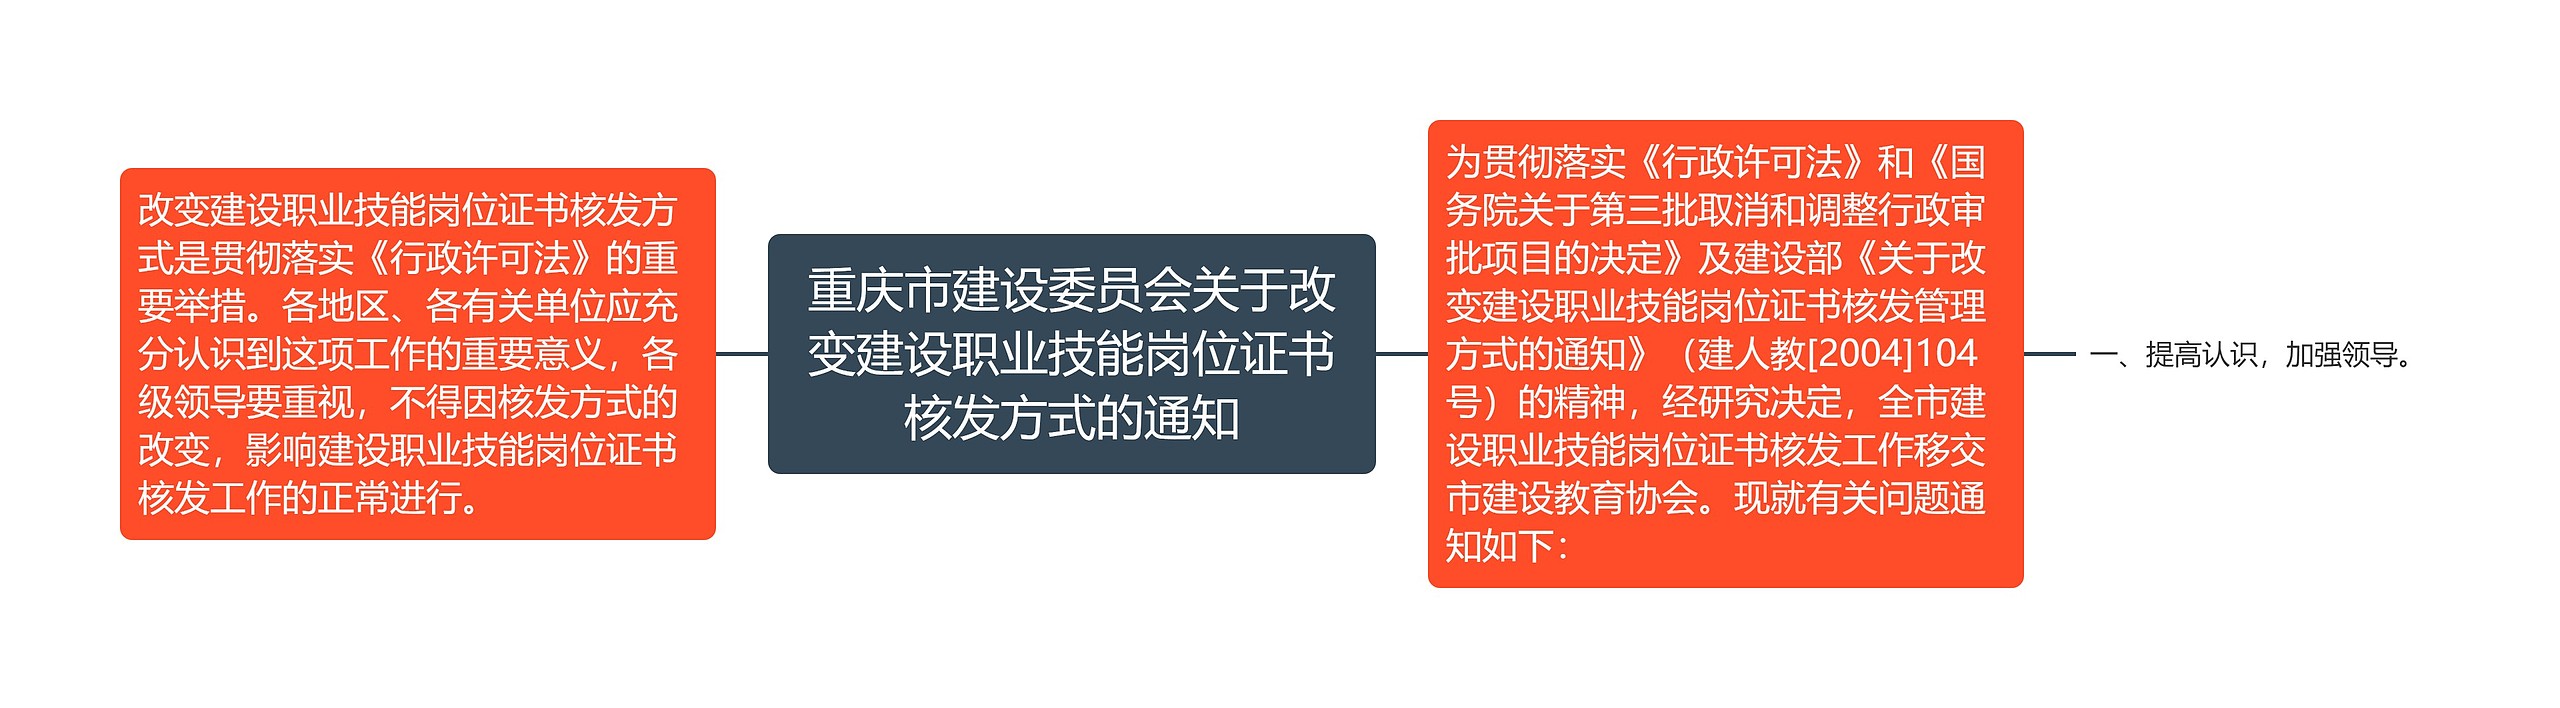 重庆市建设委员会关于改变建设职业技能岗位证书核发方式的通知